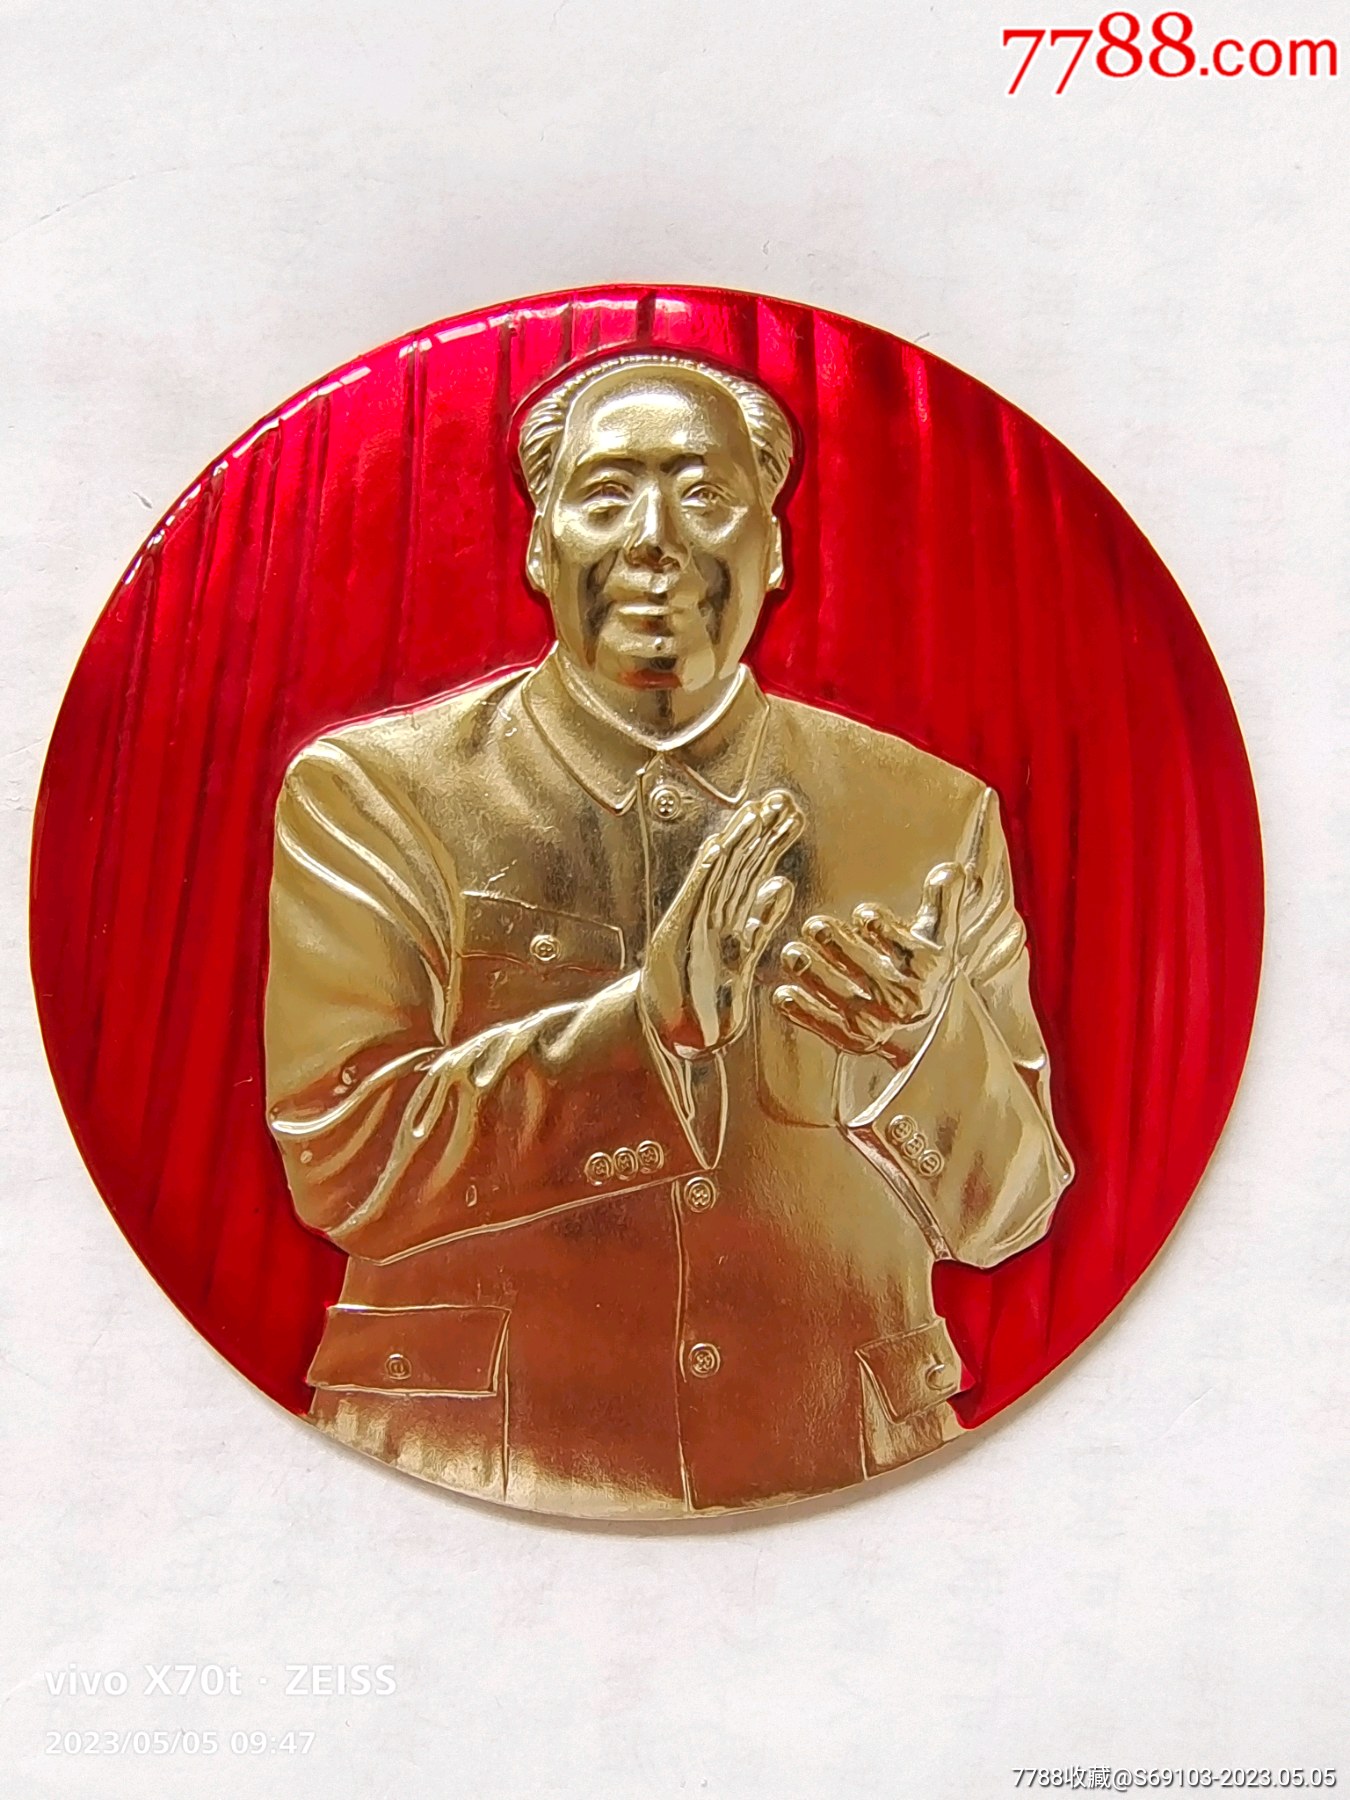 中国将举办列宁诞辰150周年纪念展 - 2019年1月4日, 俄罗斯卫星通讯社